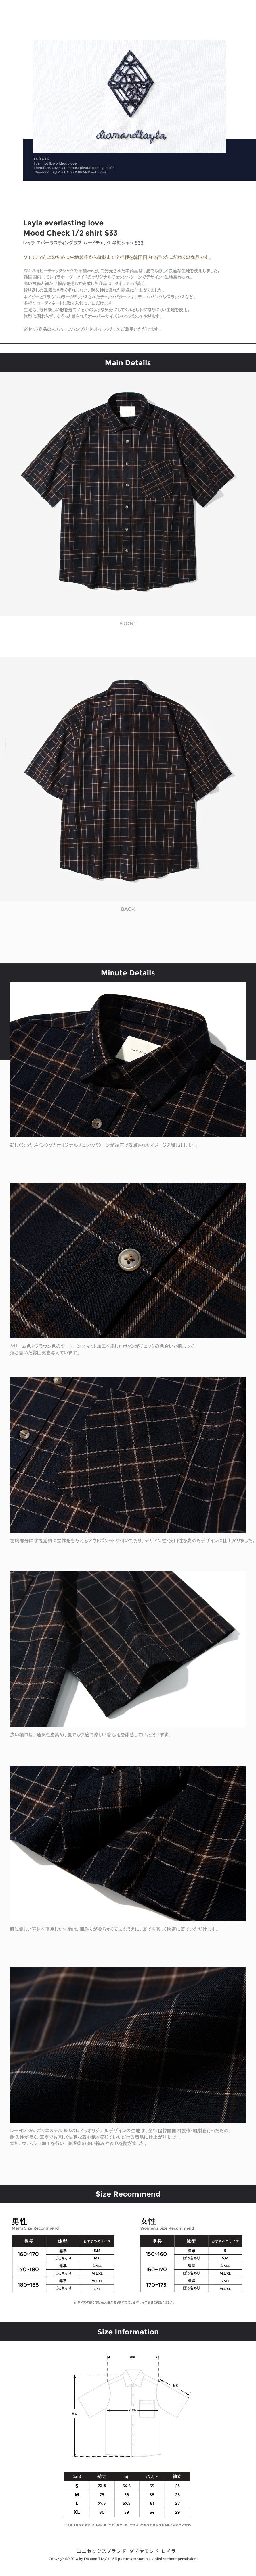 ムードチェック半袖シャツ&パンツSET(ネイビー)  | 詳細画像2